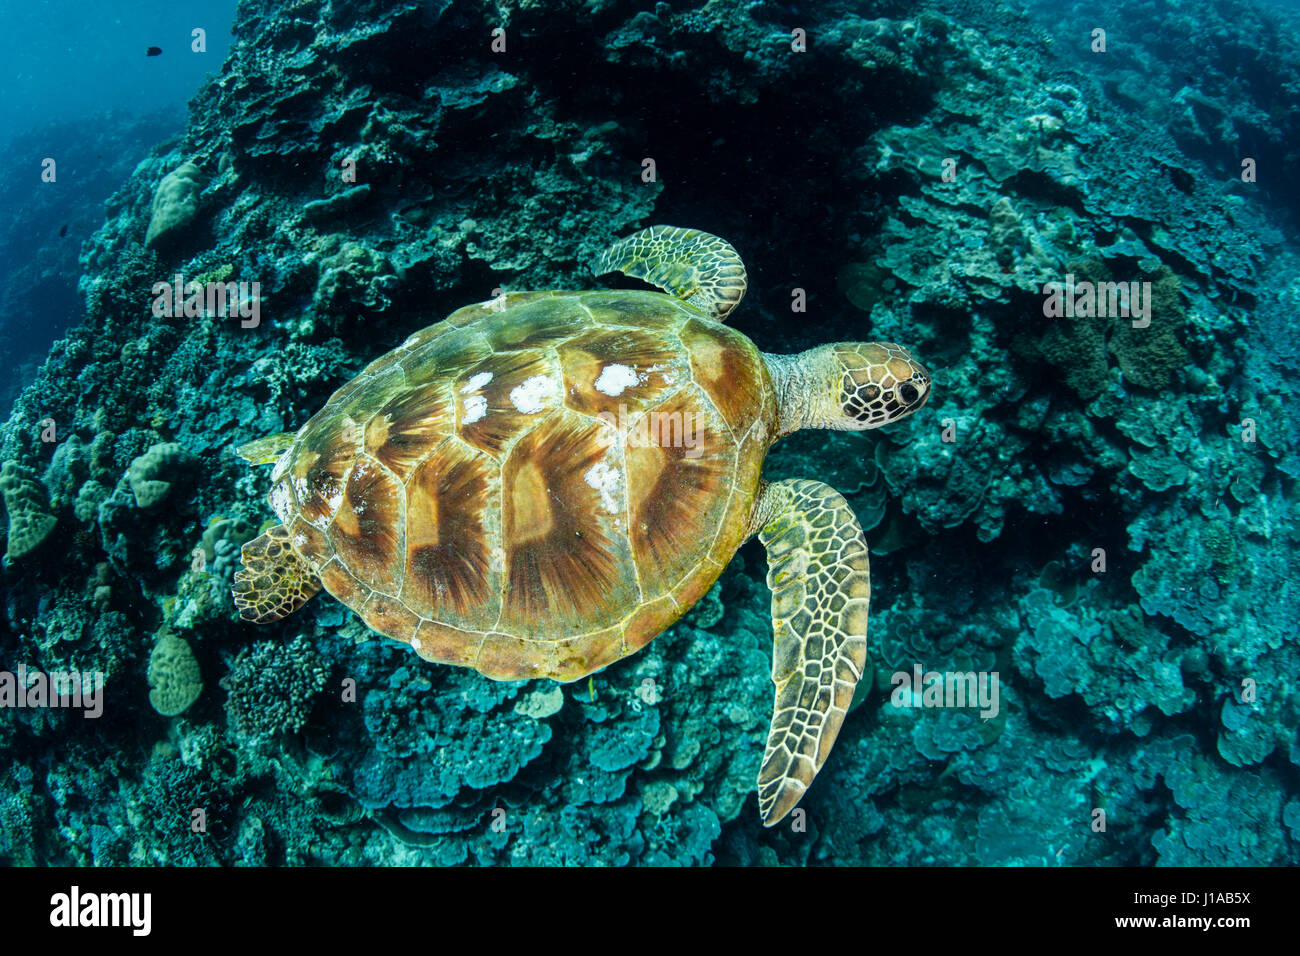 Una tartaruga verde nuotate lungo la barriera corallina in Repubblica di Palau. Questo paese tropicale è una destinazione popolare per gli amanti delle immersioni e dello snorkeling. Foto Stock